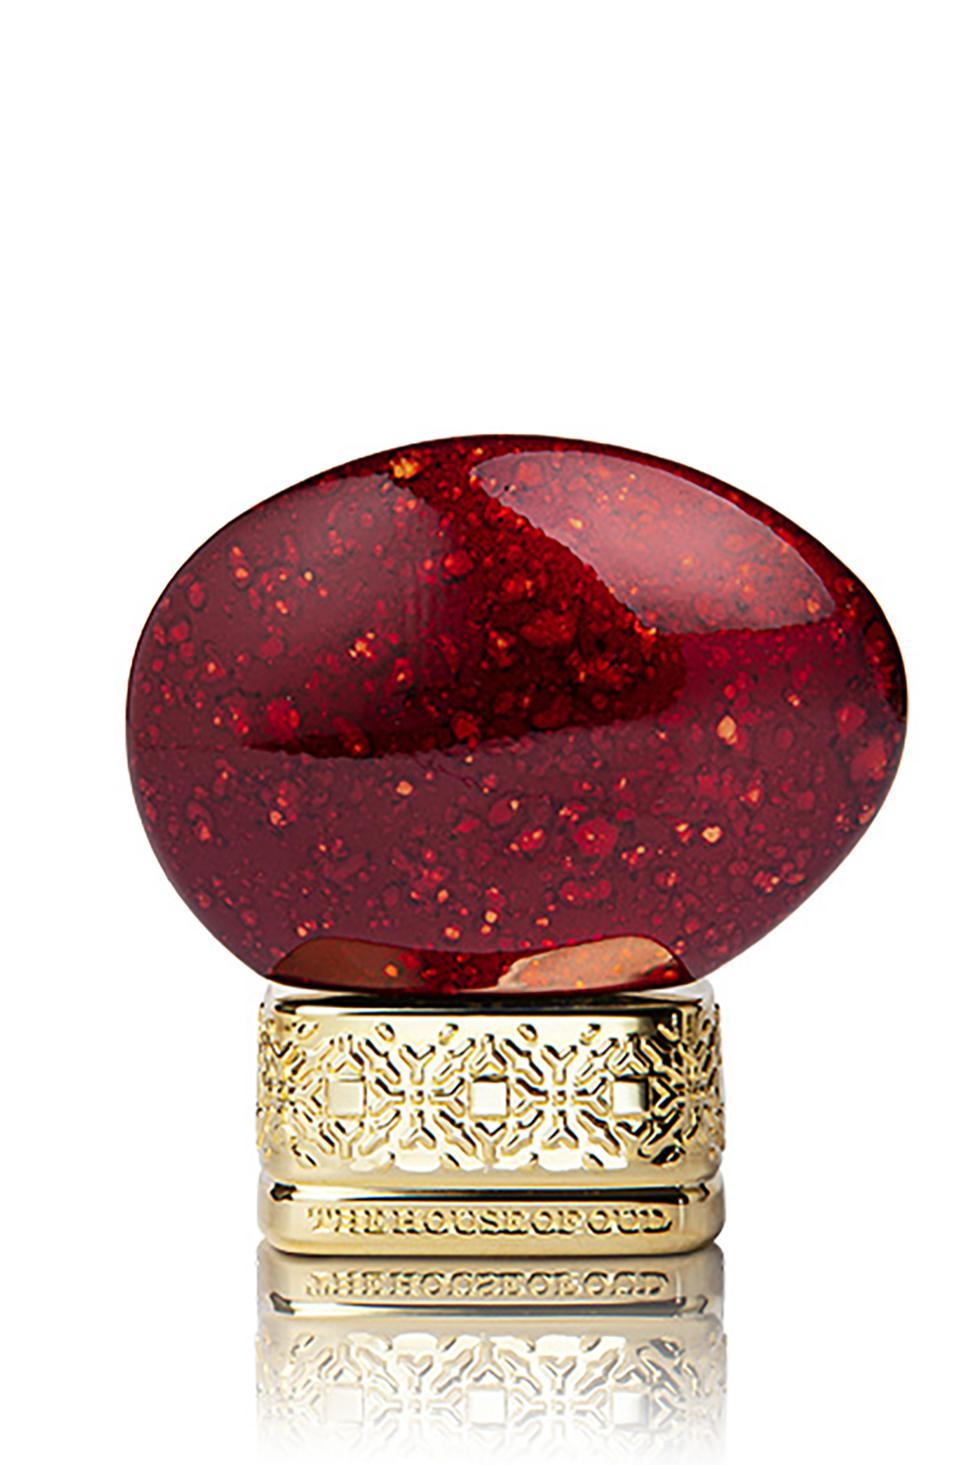 Теплый пряный унисекс-аромат Ruby Red, Royal Stones, The House of Oud